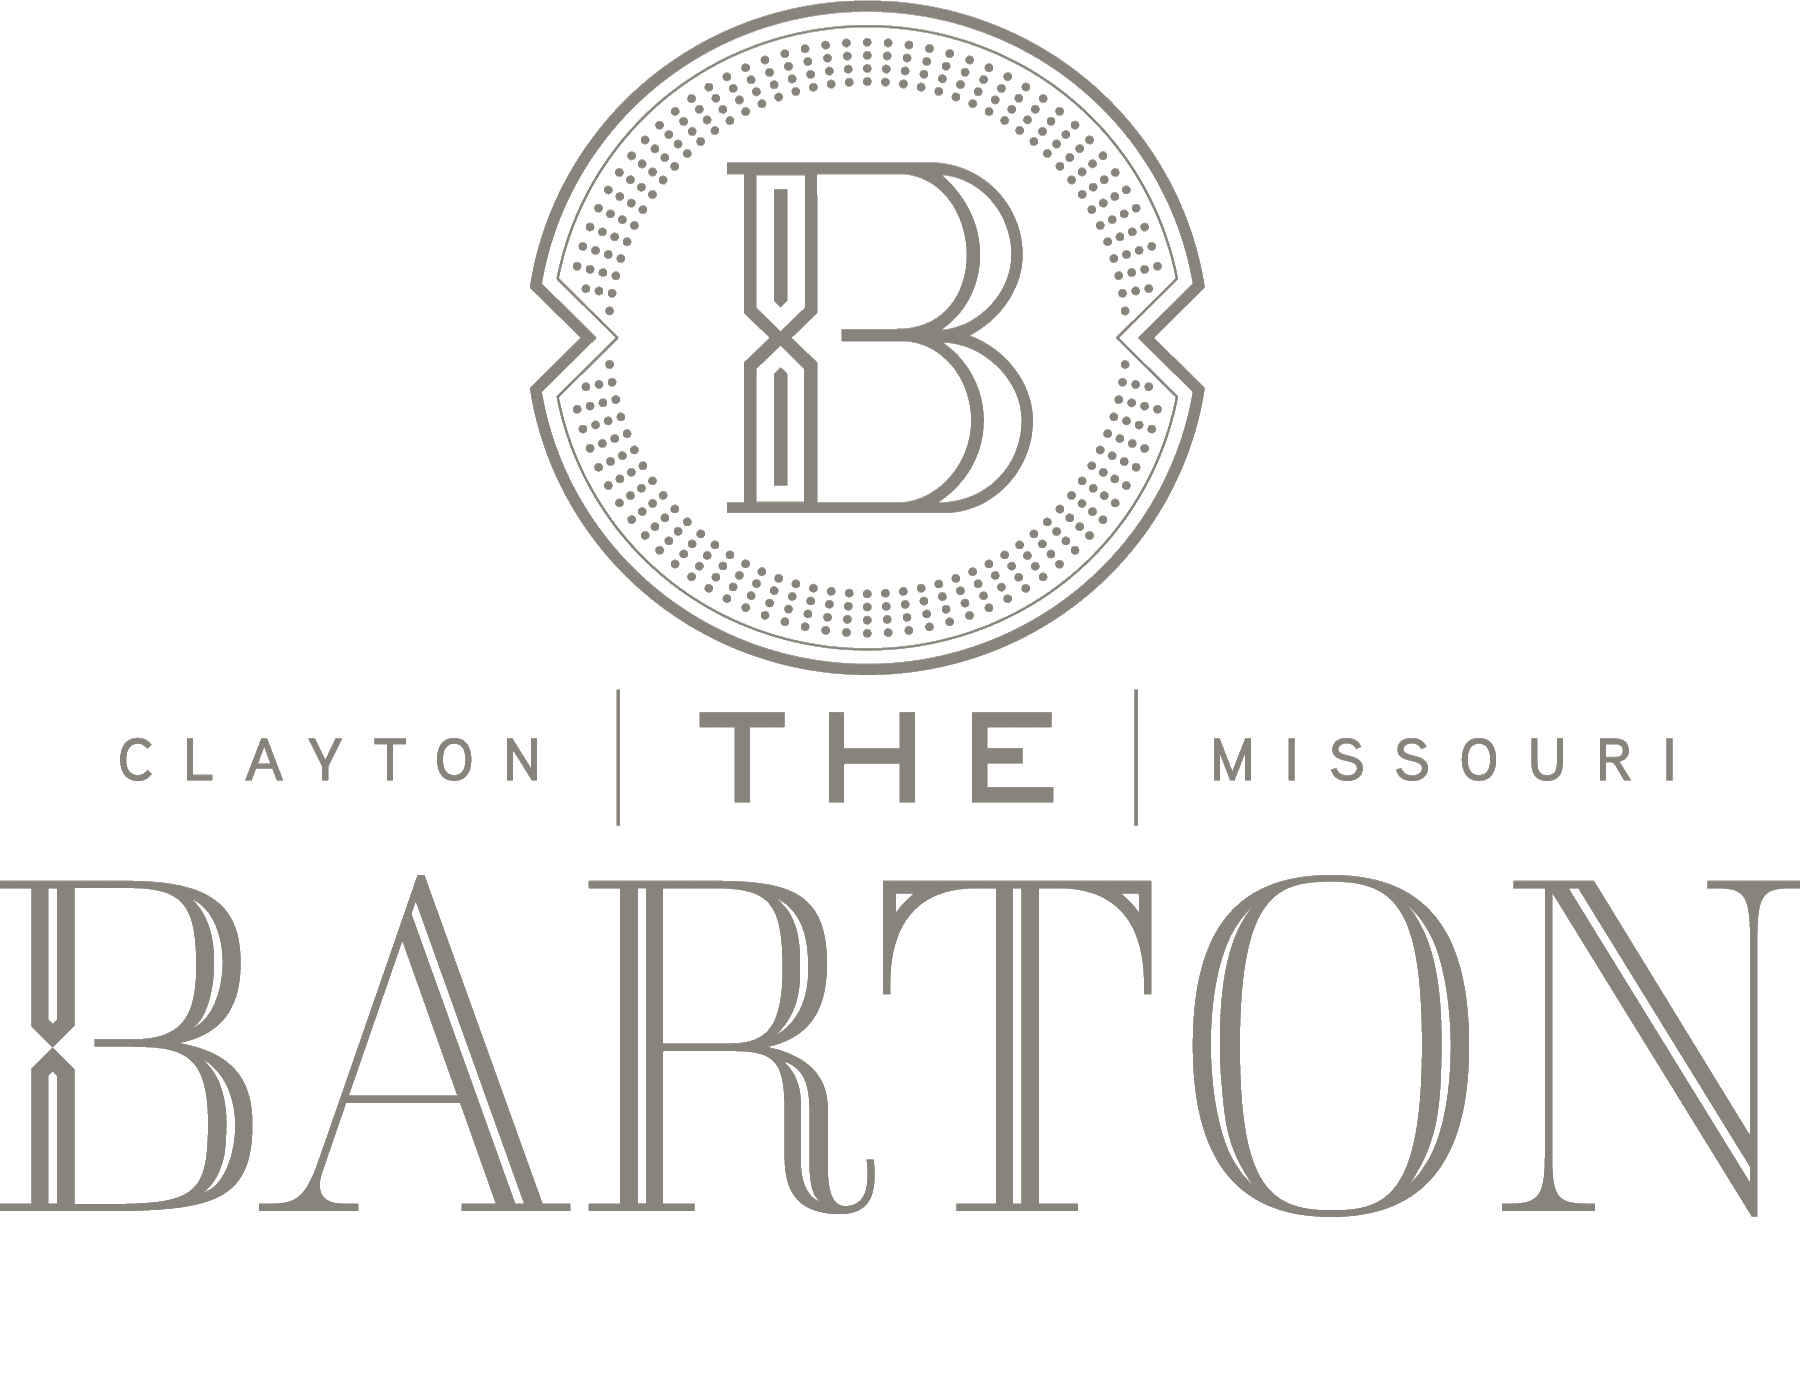 Logo icon of The Barton in Clayton, Missouri